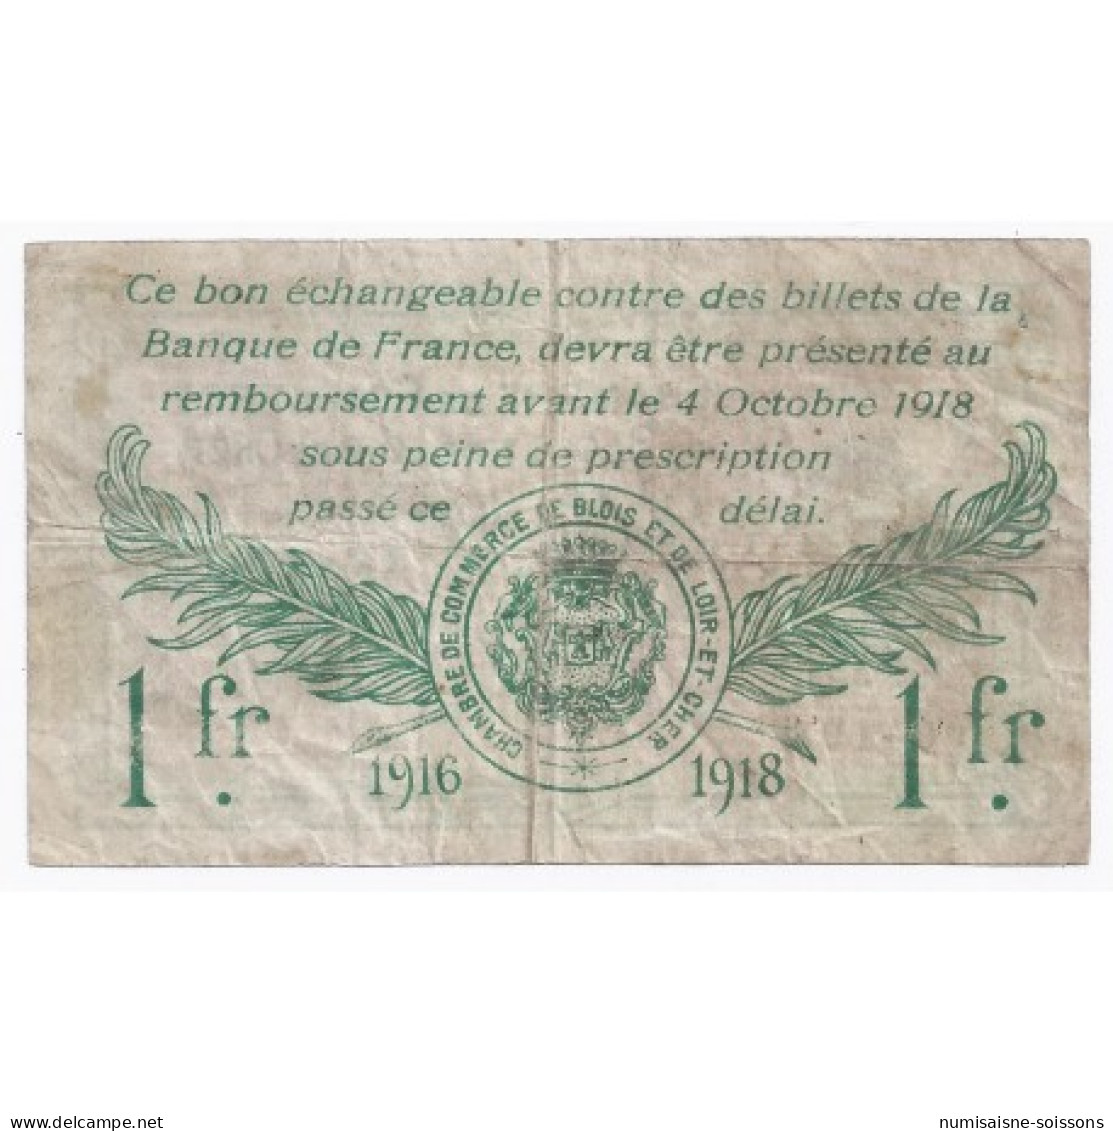 41 - BLOIS ET LOIR-ET-CHER - CHAMBRE DE COMMERCE - 1 FRANC - 03/10/1916 - TB+ - Notgeld